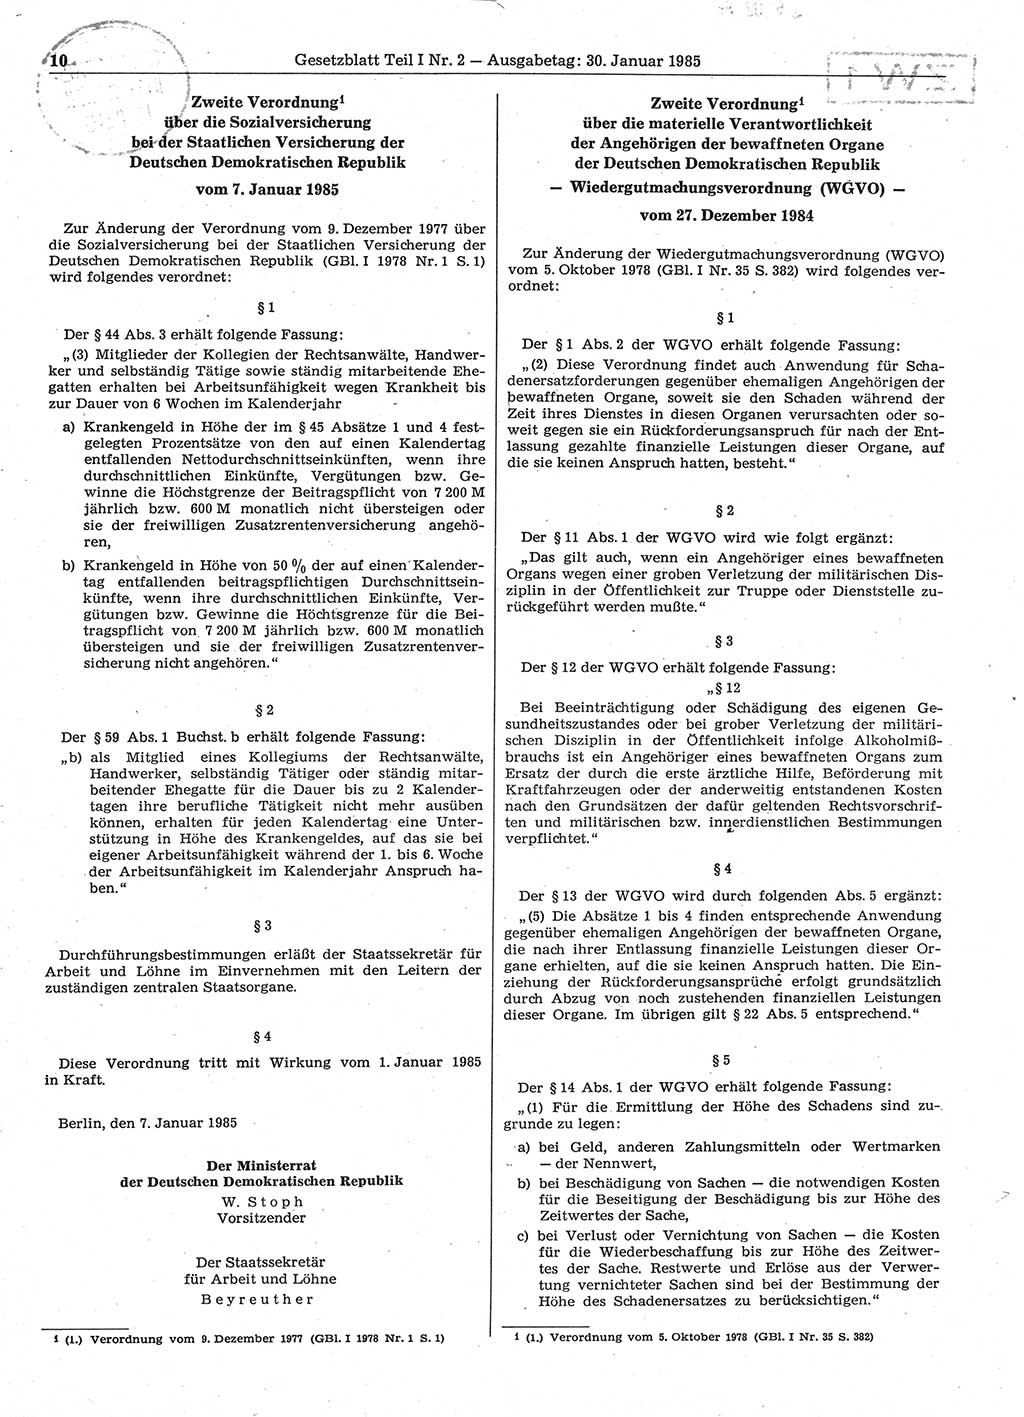 Gesetzblatt (GBl.) der Deutschen Demokratischen Republik (DDR) Teil Ⅰ 1985, Seite 10 (GBl. DDR Ⅰ 1985, S. 10)